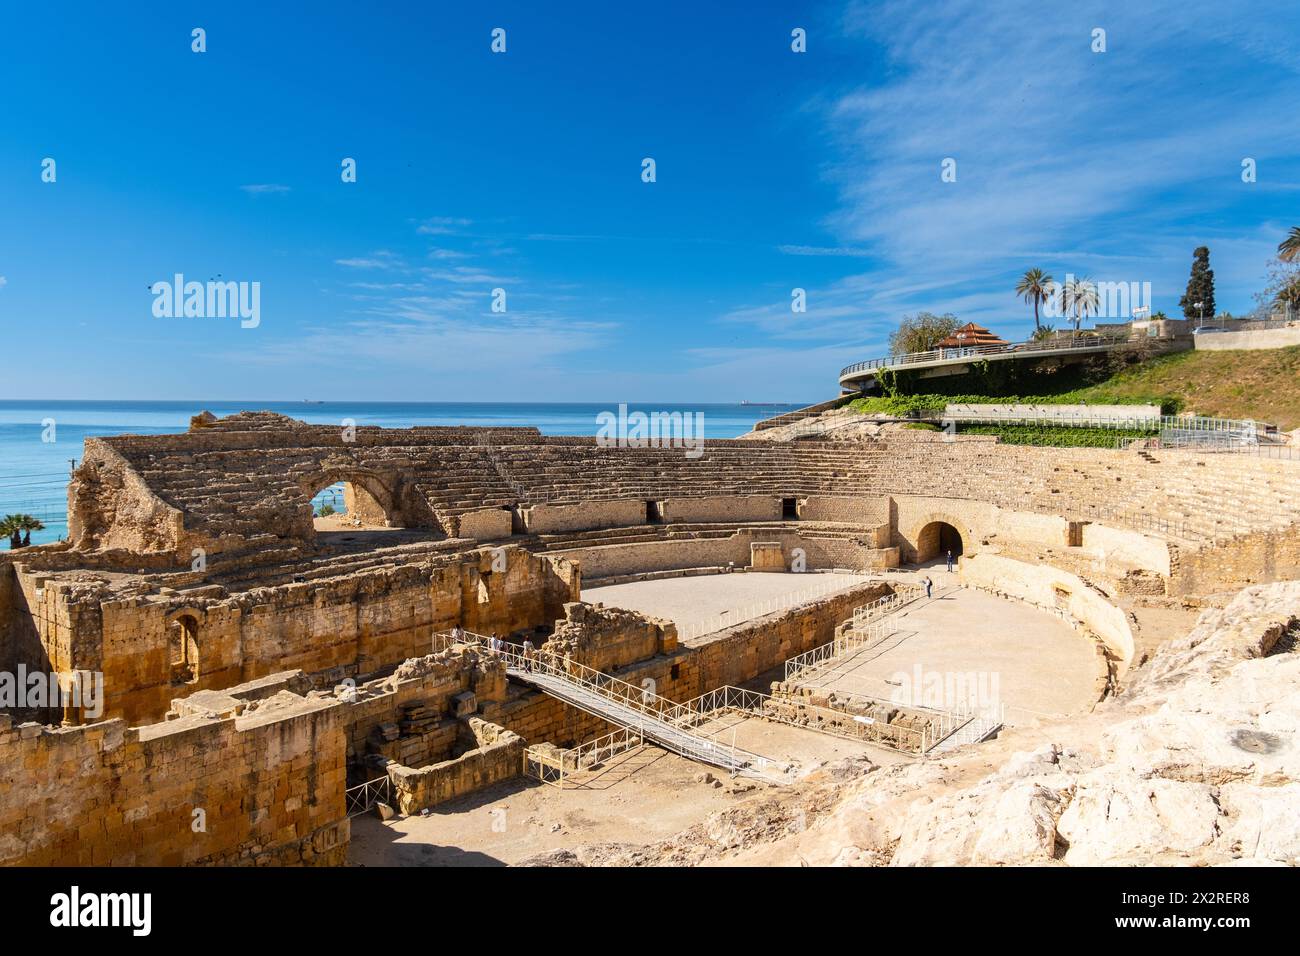 Antikes römisches Amphitheater, Weltkulturerbe der Vereinten Nationen in Tarragona, Spanien Tarragona Katalonien Spanien *** Ancient Roman amphitheate Stock Photo